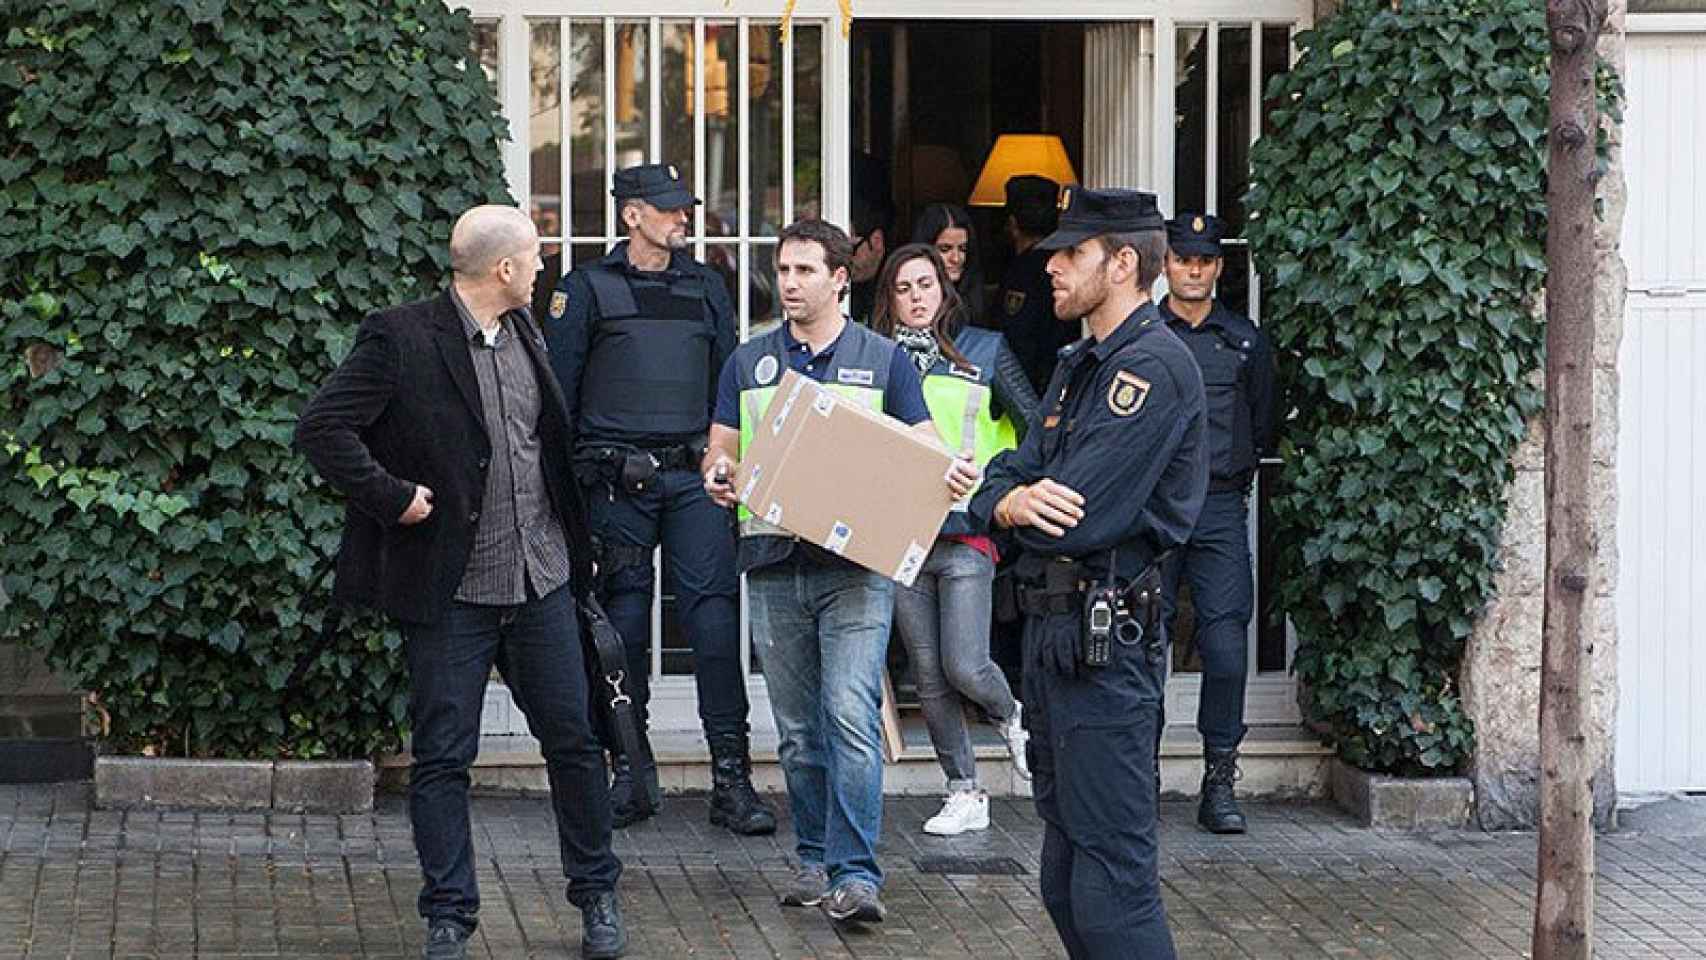 Agentes de la Policia sacando cajas del domicilio de la familia Pujol Ferrussola.